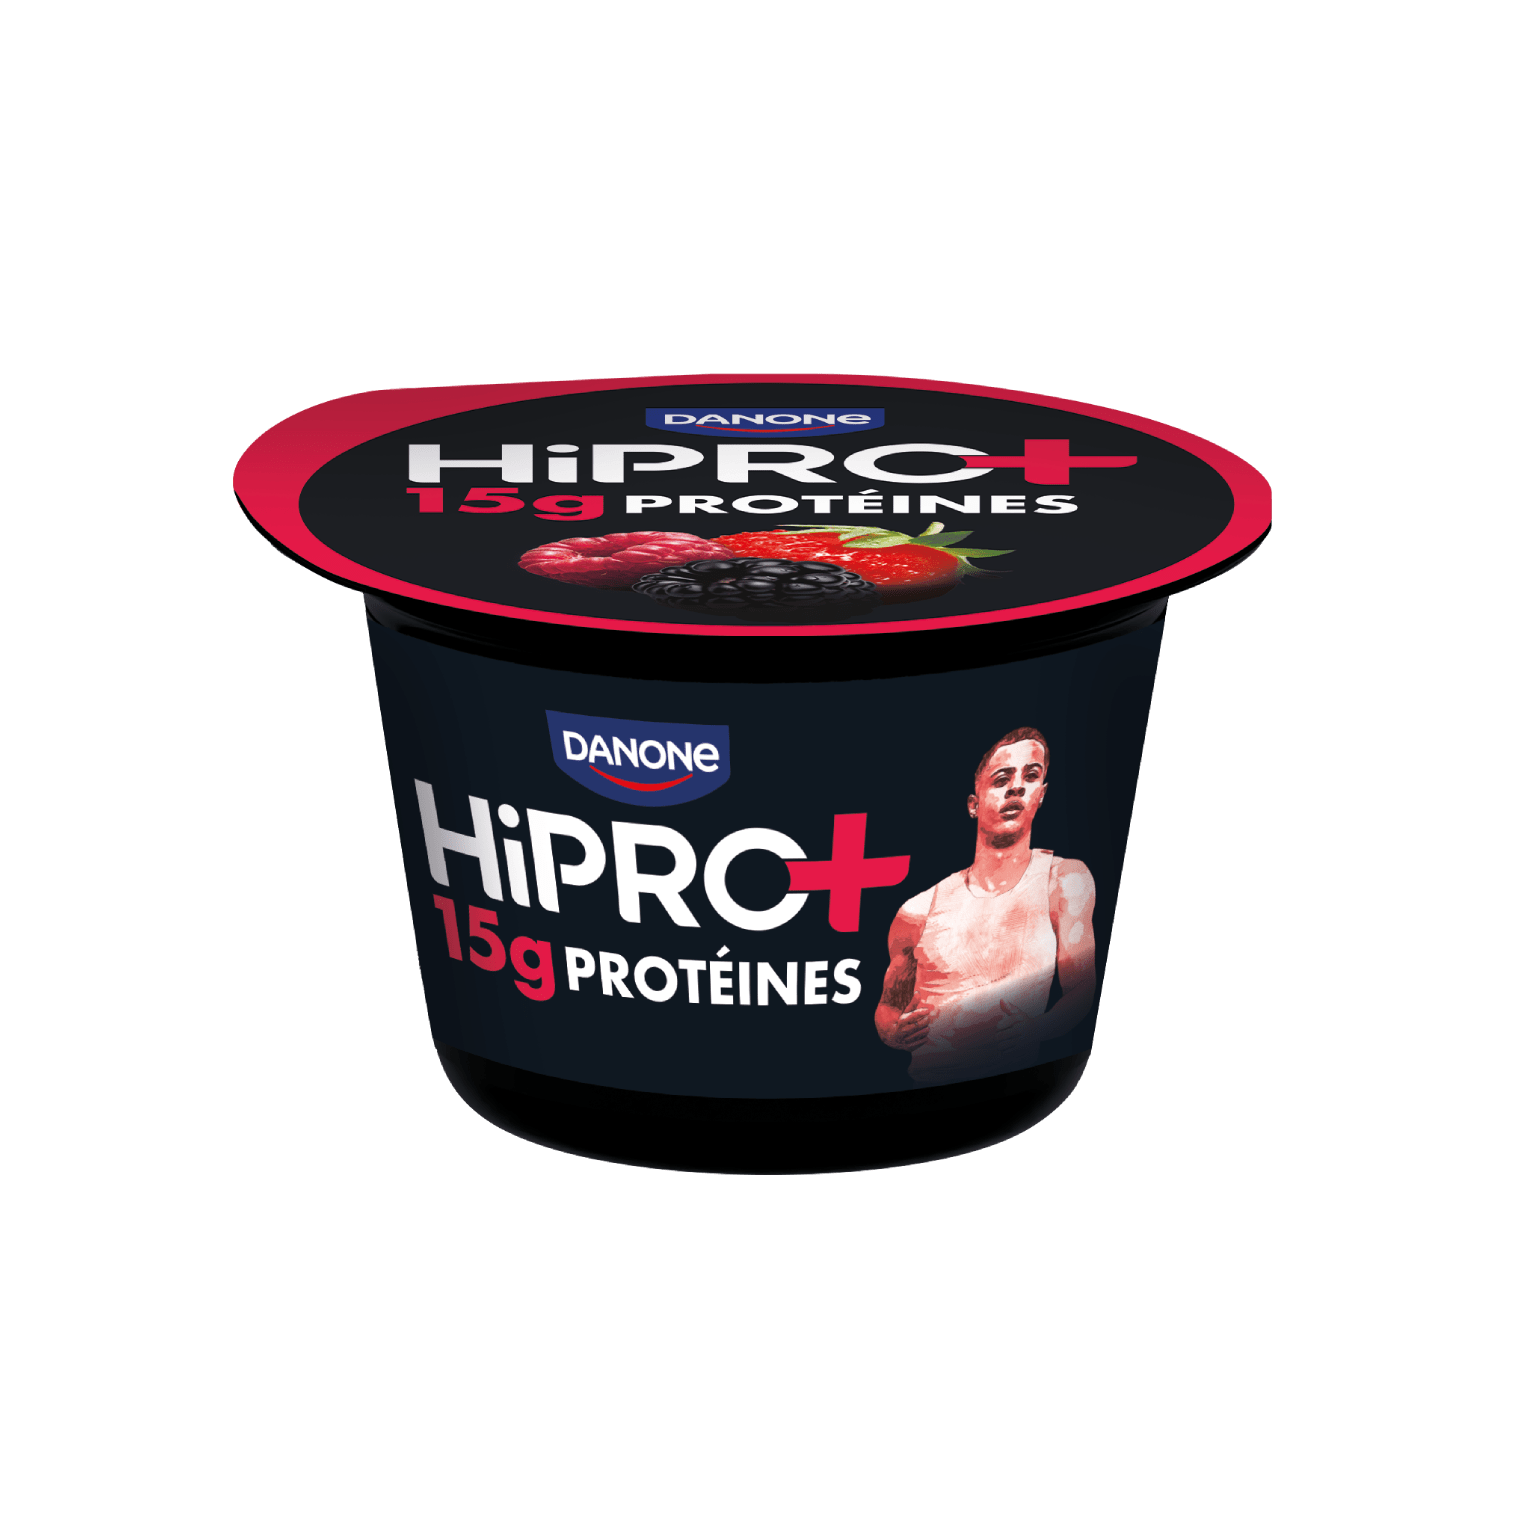 Nouvelle gamme en édition limitée : HiPRO+ fruits rouges, en pot avec 15g de protéines et sans matières grasses.